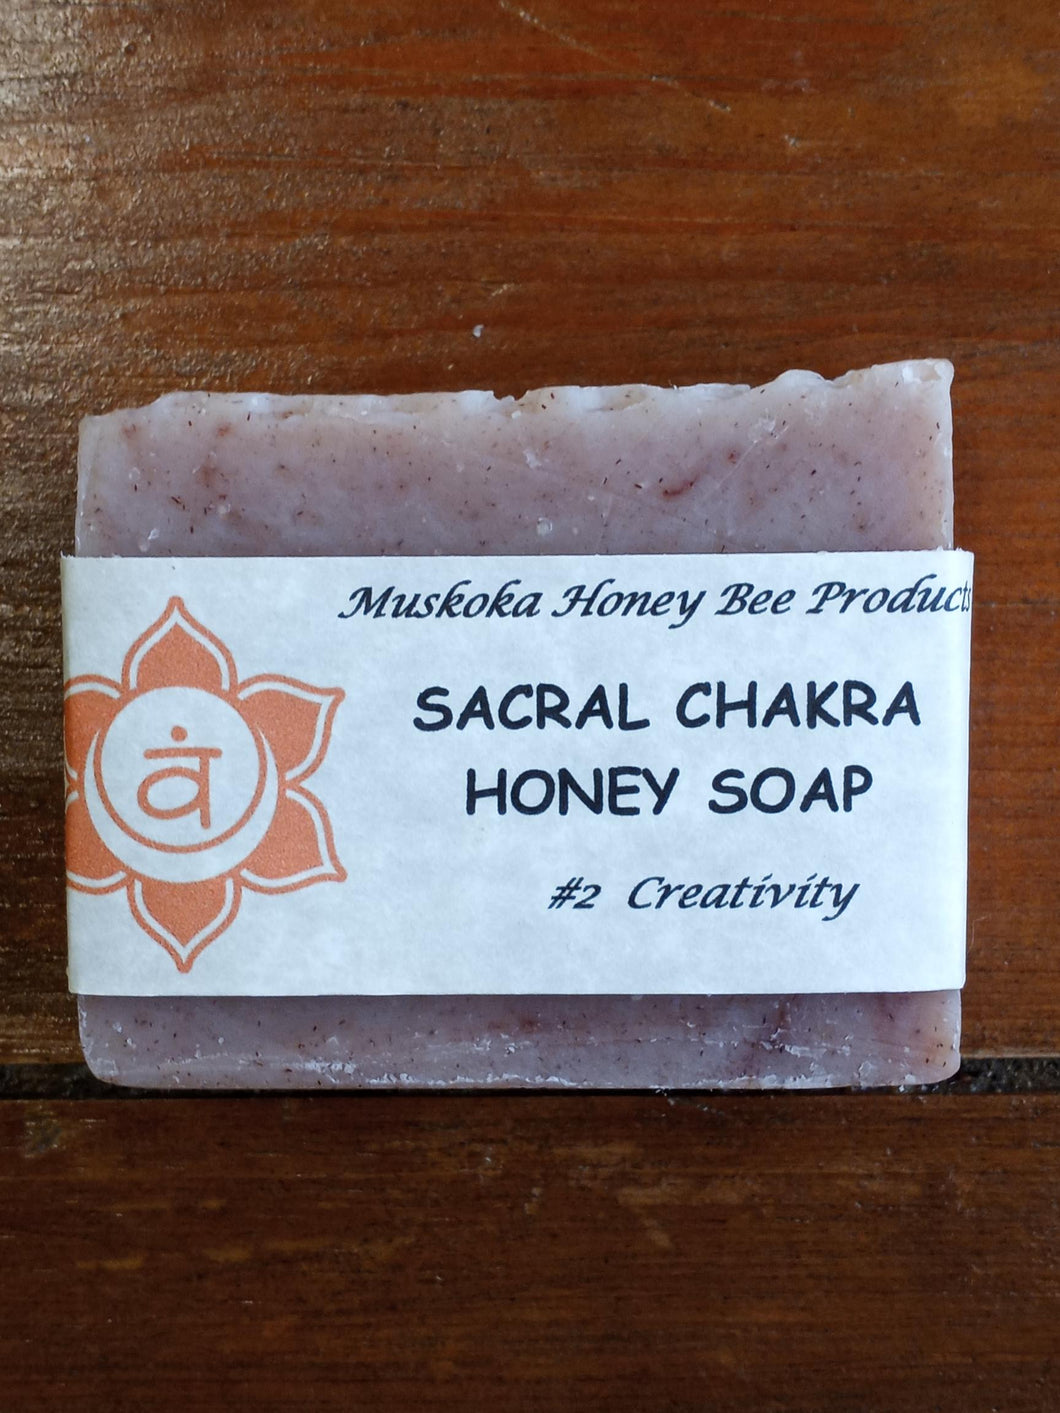 #2 - Sacral Chakra Honey Soap (Creativity)